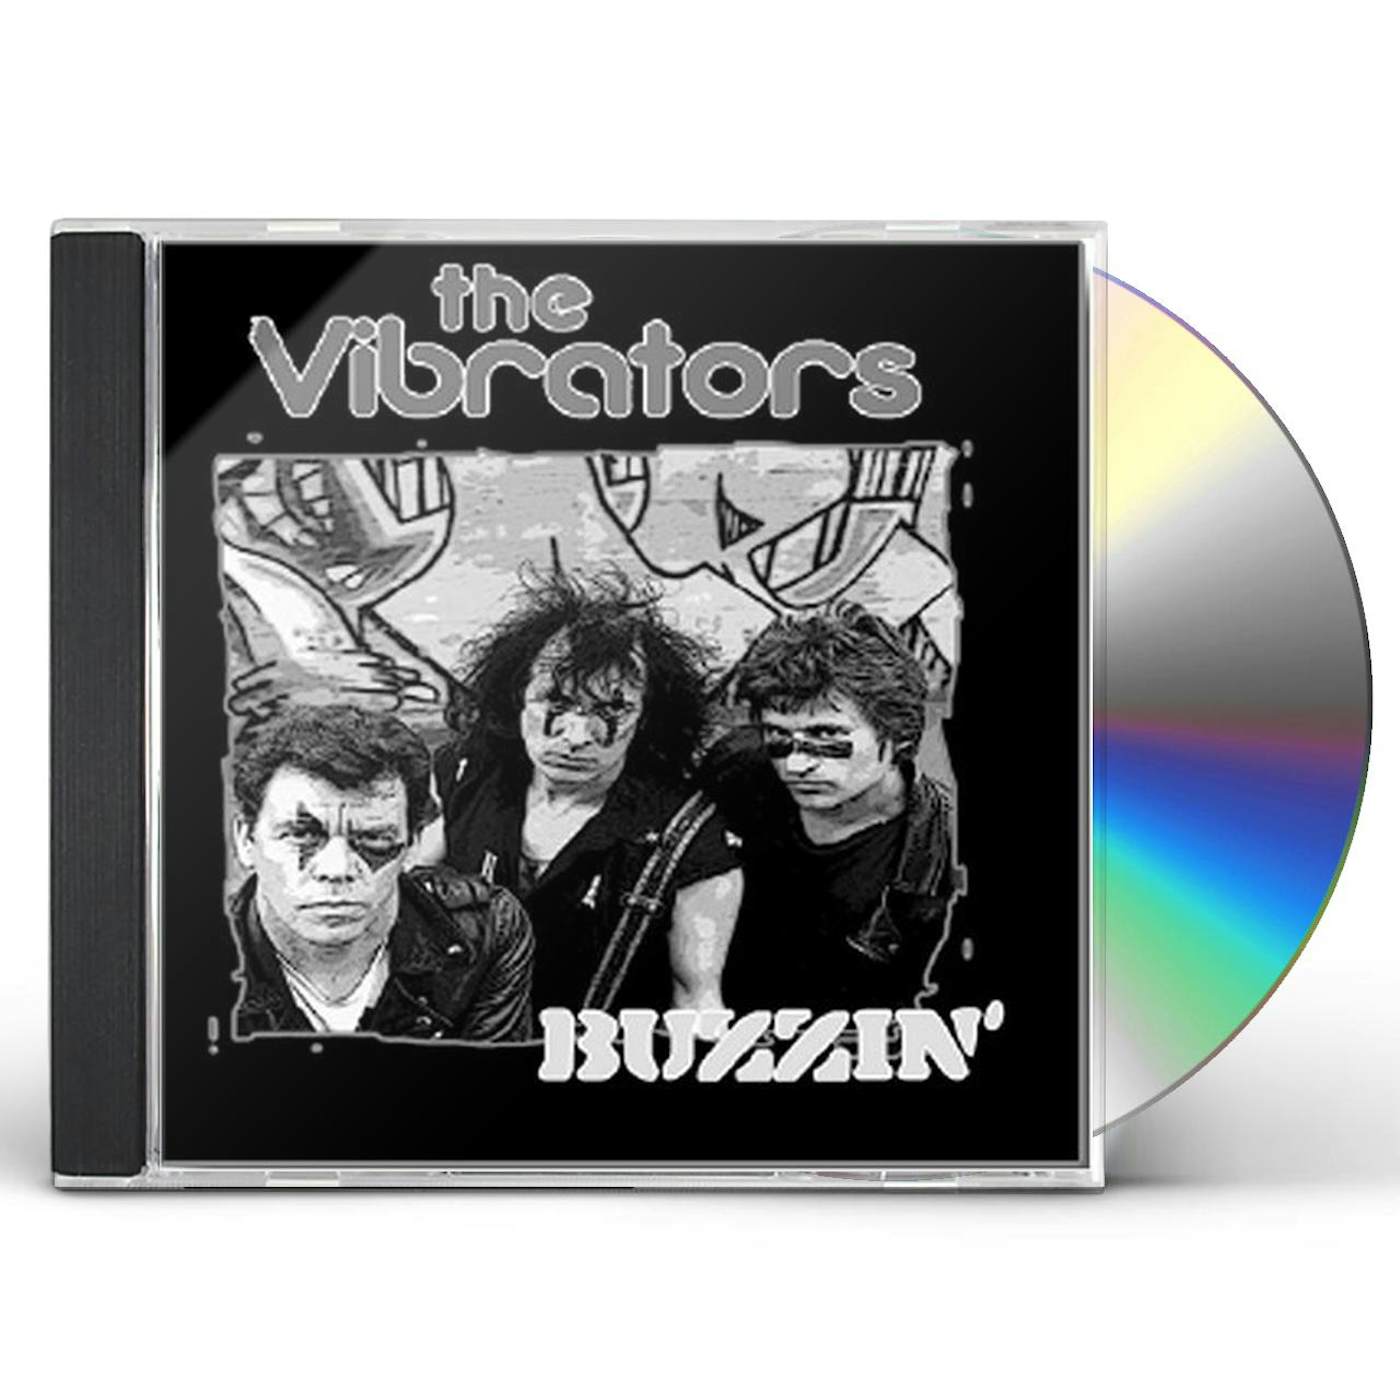 The Vibrators BUZZIN CD